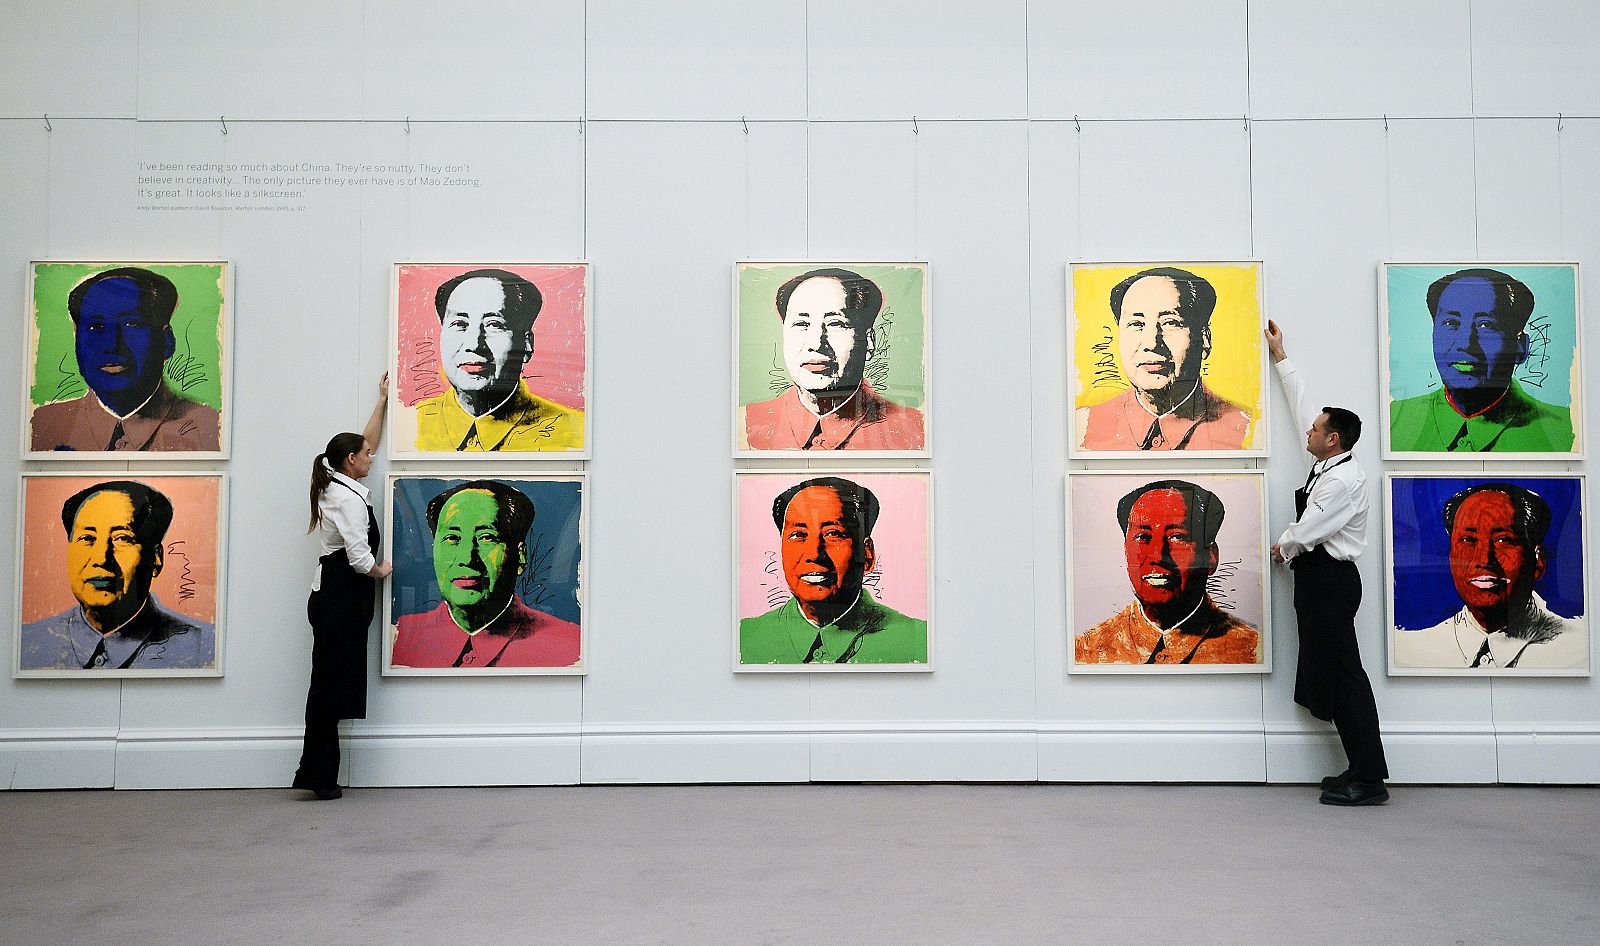 La casa de subastas Sotheby's ssubasta varias obras del artista Warhol que retratan al revolucionario chino Mao